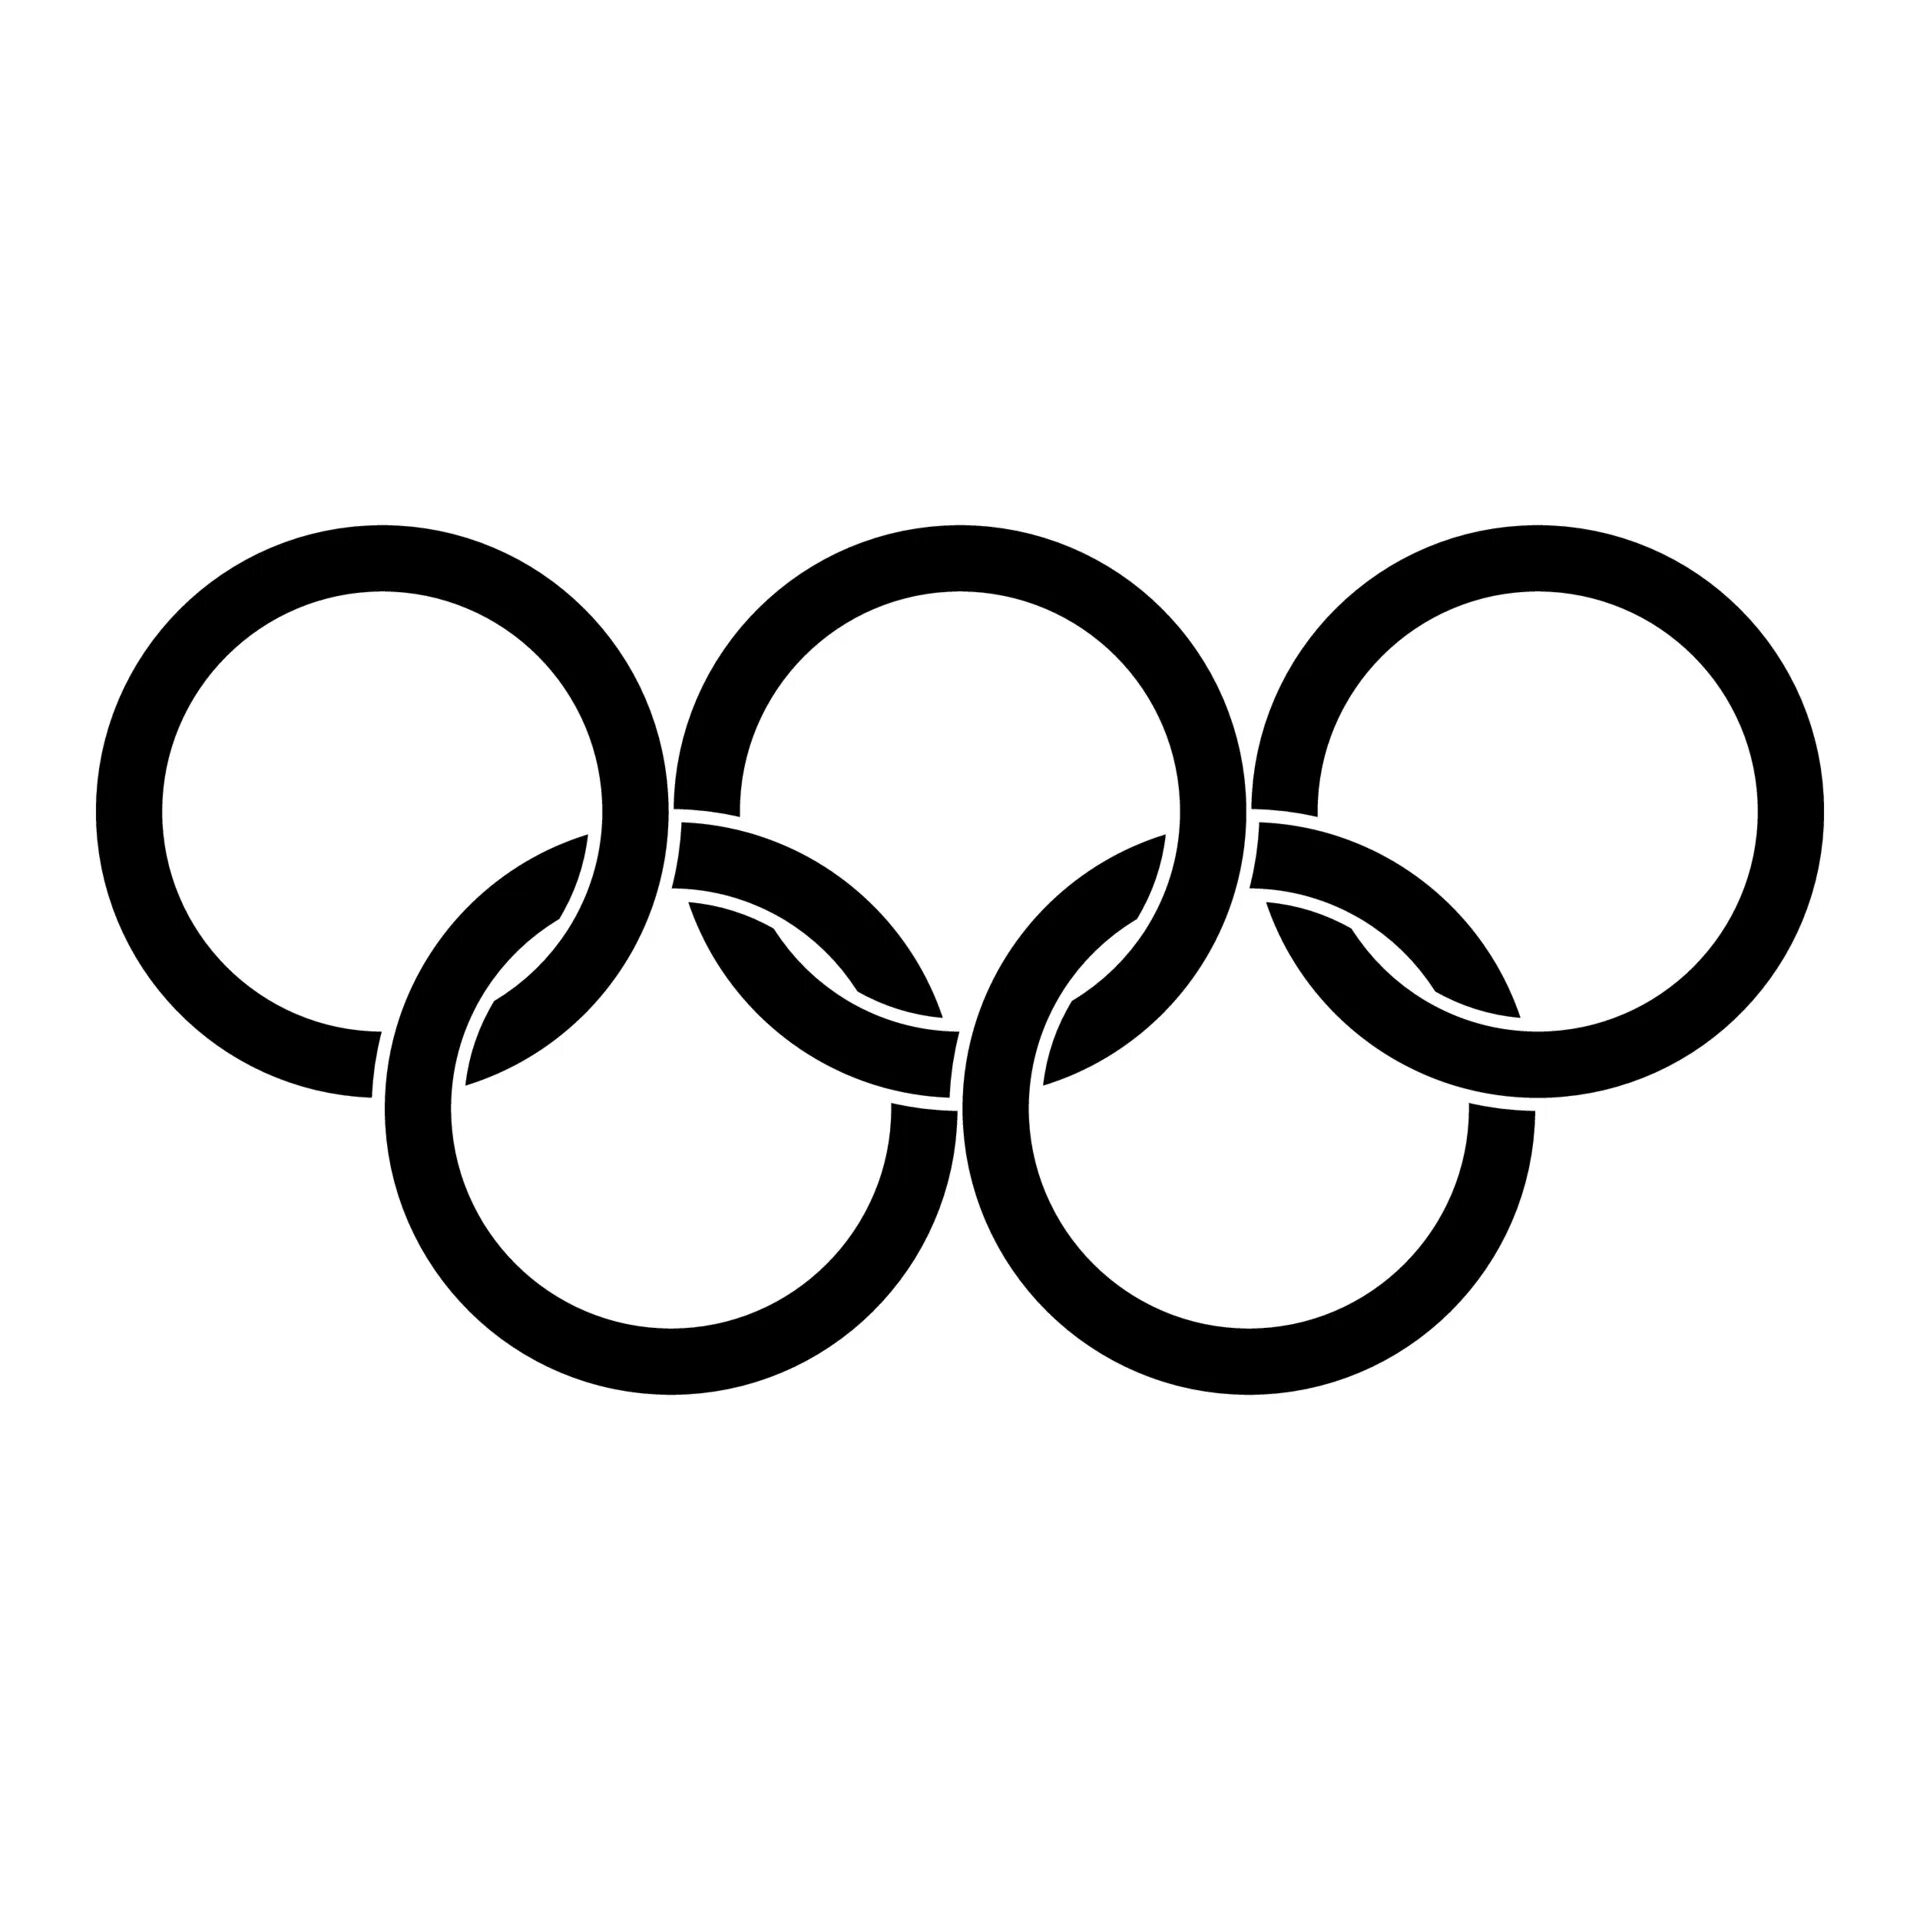 Олимпийские кольца. Кольца олимпиады. Значок Олимпийских игр. Символ Олимпийских игр кольца. Виды спорта кольца